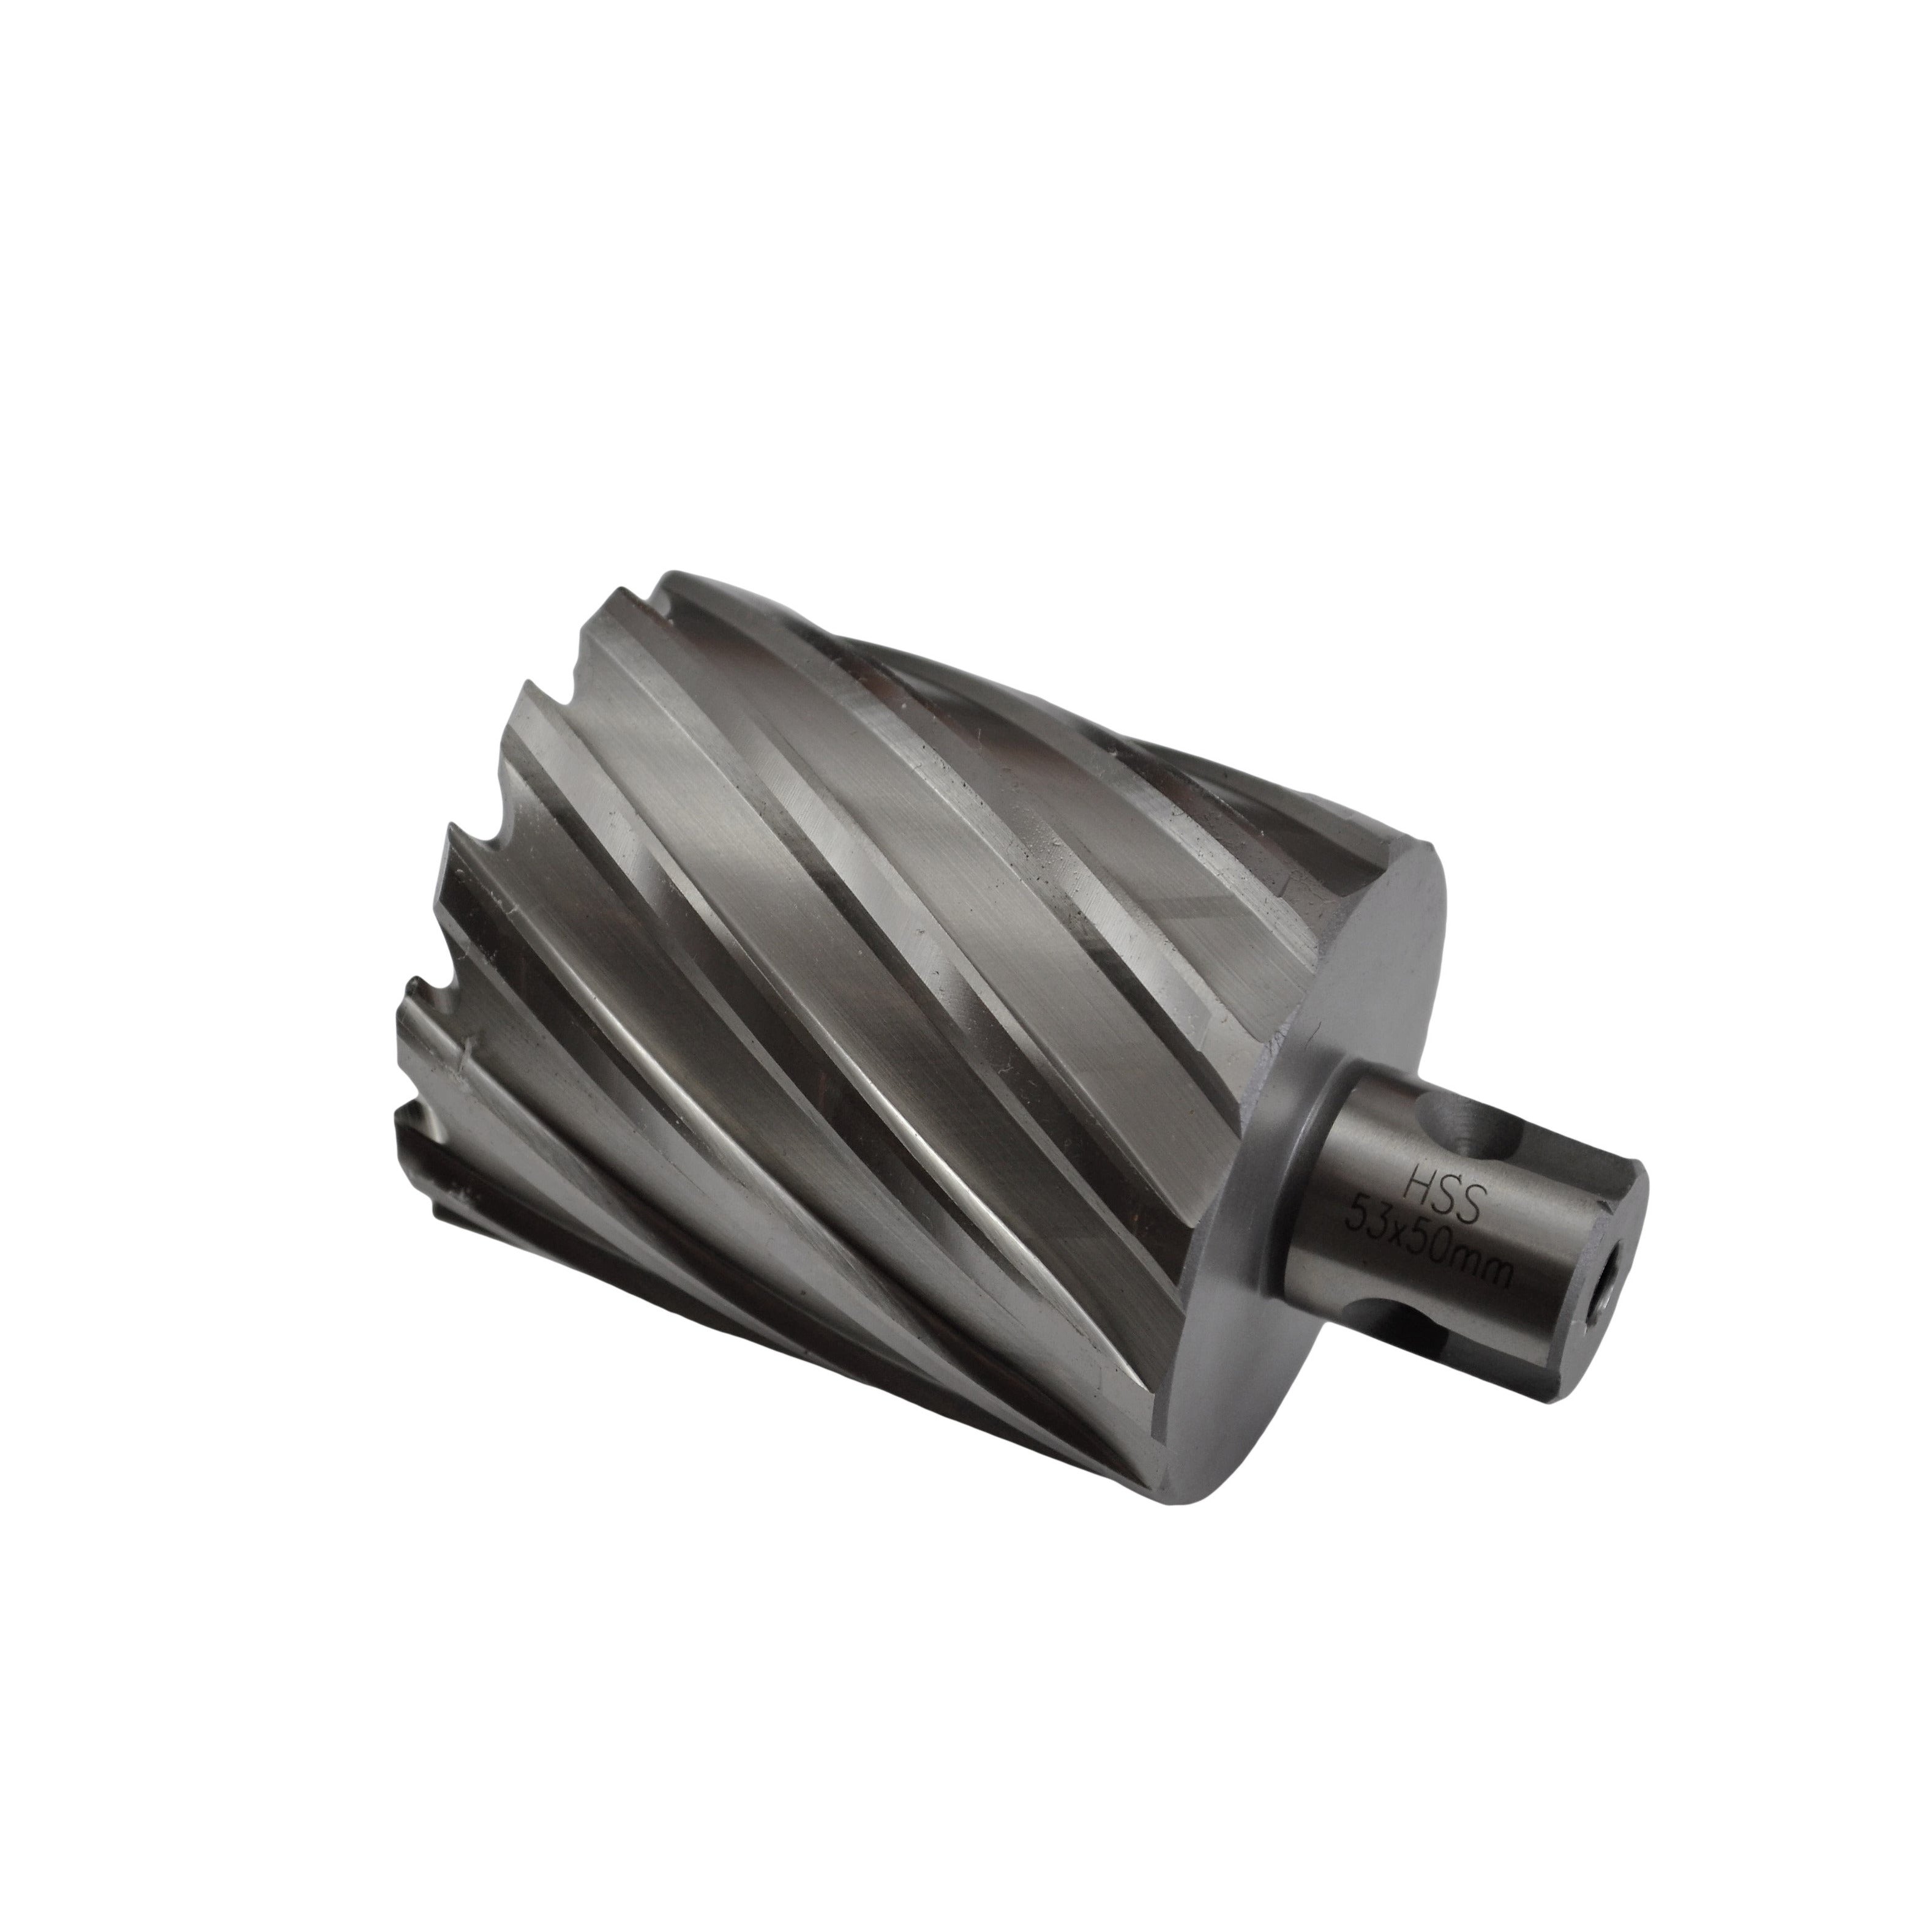 annular cutter 53x50mm HSS CNC broach cutter universal shank rotabroch slugger industrial metalwork supplies 